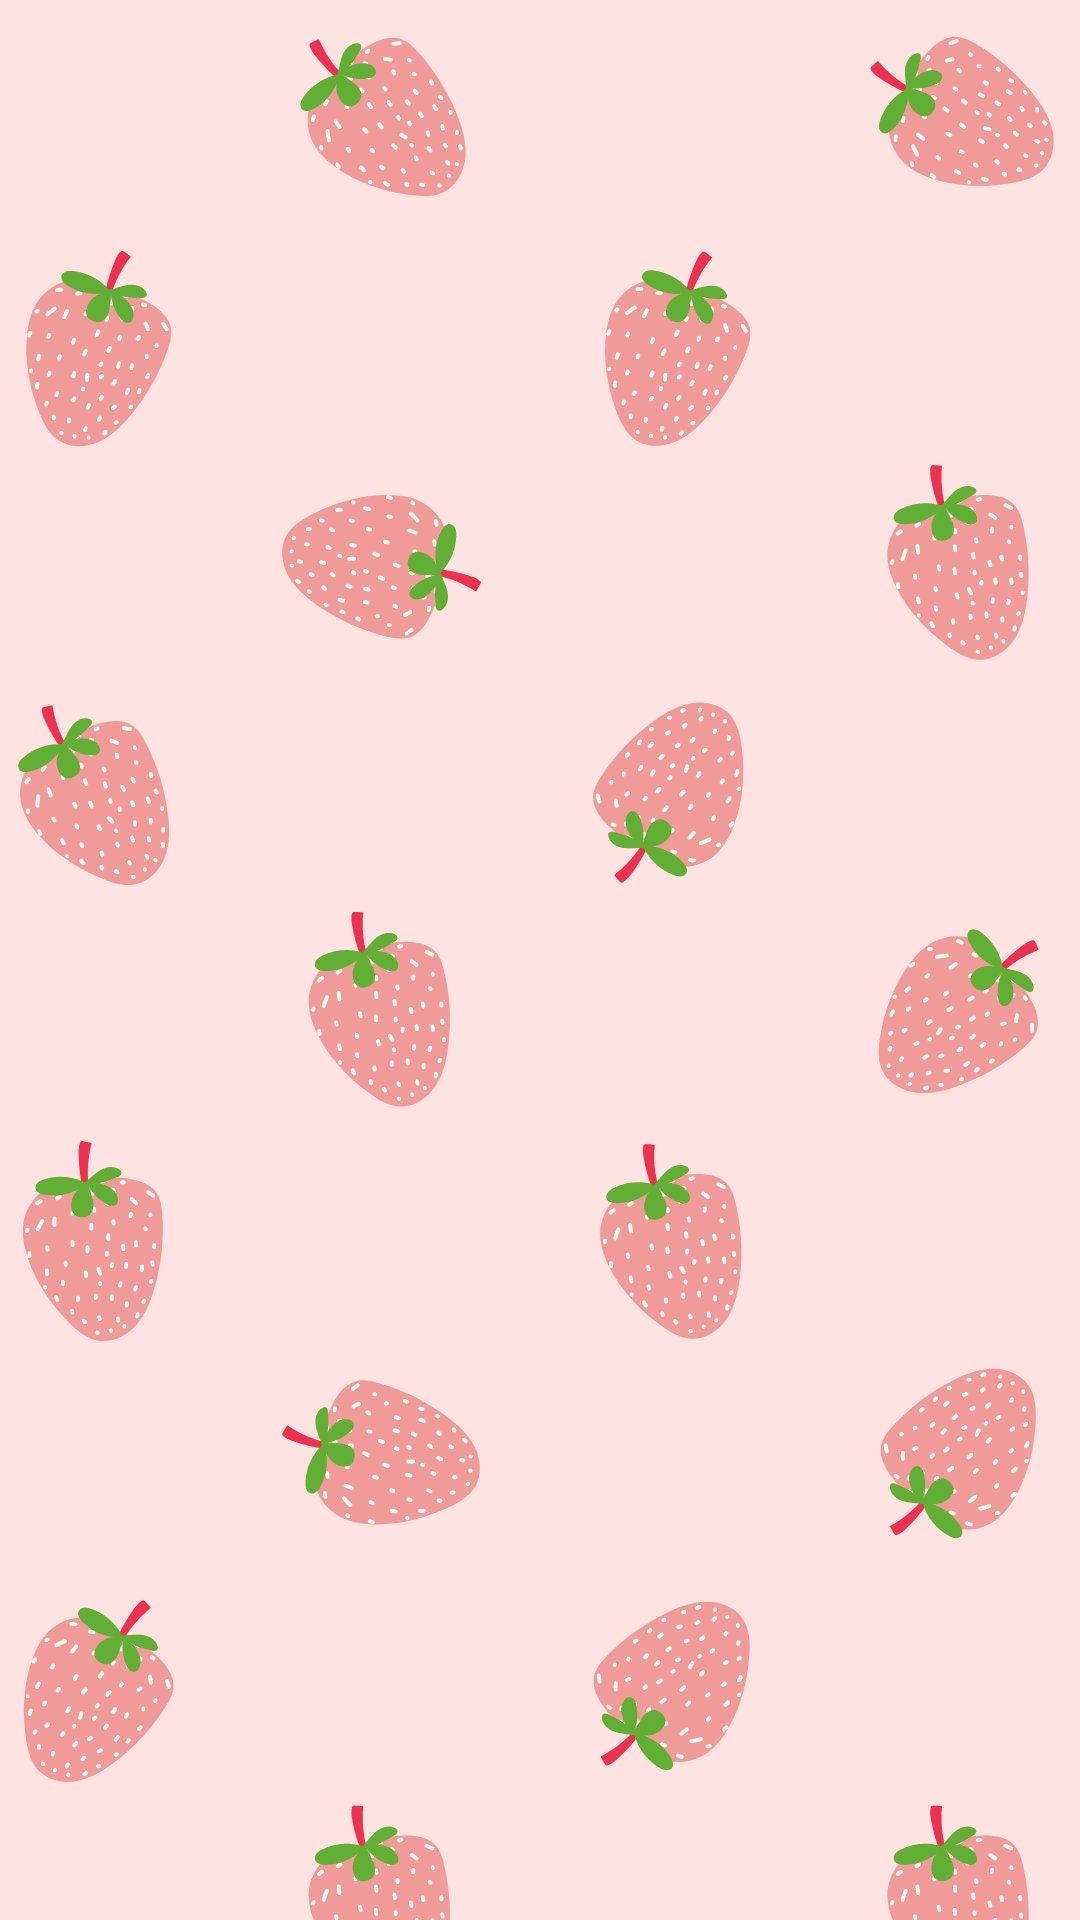  Erdbeeren Hintergrundbild 1080x1920. Niedliche rosa Erdbeere Kawaii iPhone Sperrbildschirm Rosa